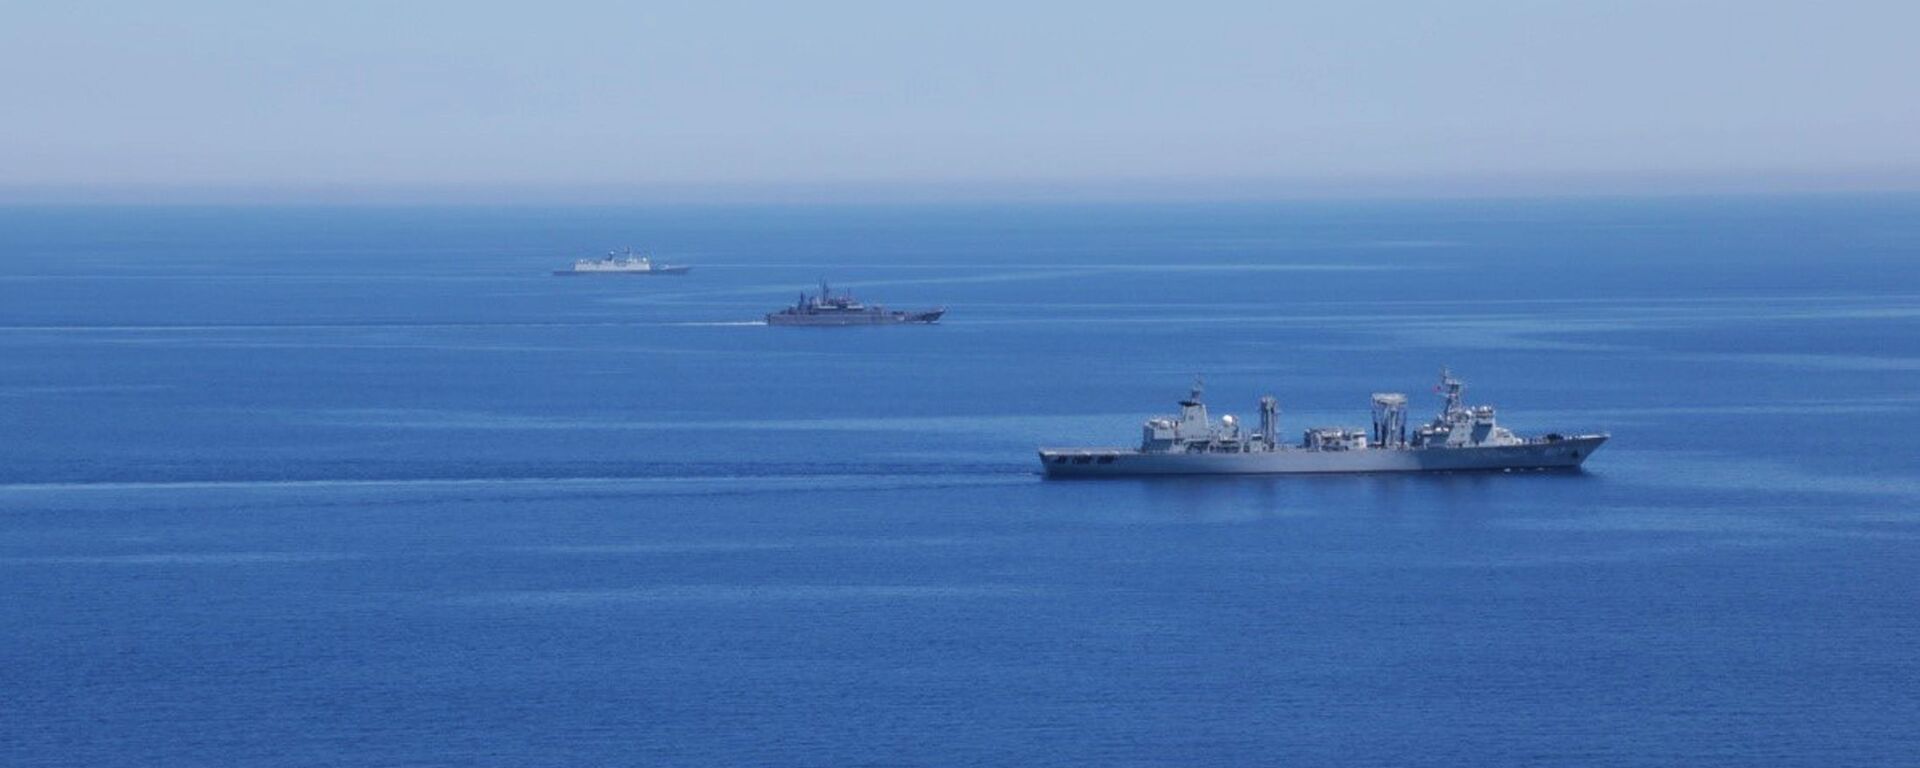 Các tàu của Hải quân Nga và Trung Quốc trong cuộc tập trận chung mang tên “Hợp tác trên biển -2015” ở Địa Trung Hải. - Sputnik Việt Nam, 1920, 24.10.2021